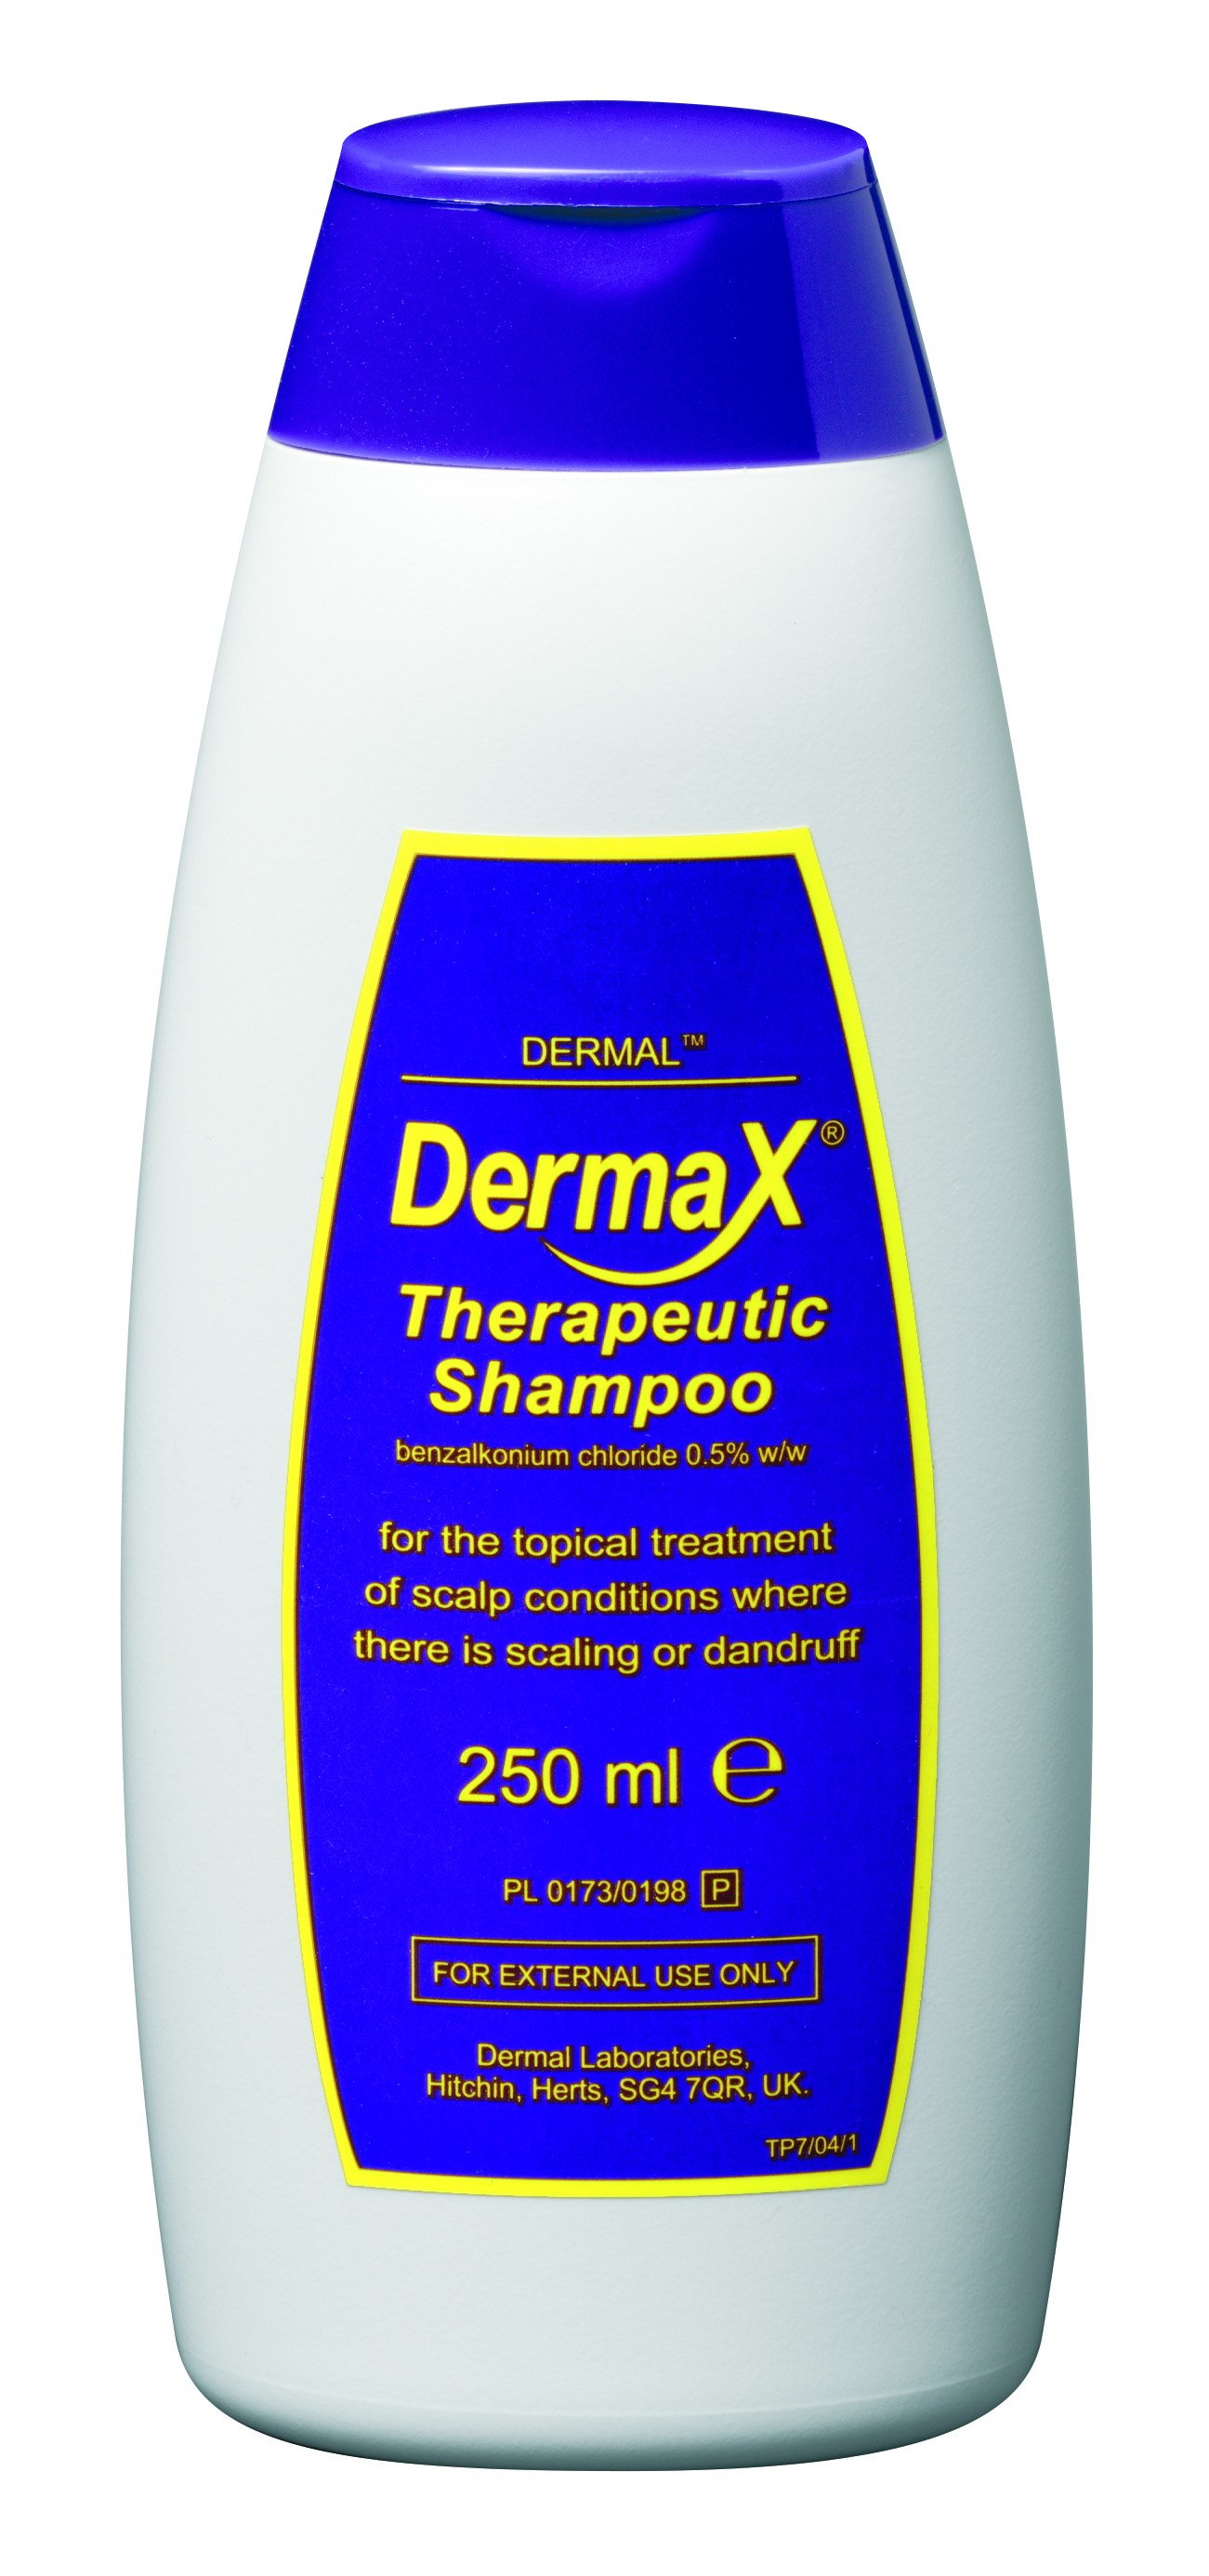 Dermax Therapeutic Shampoo